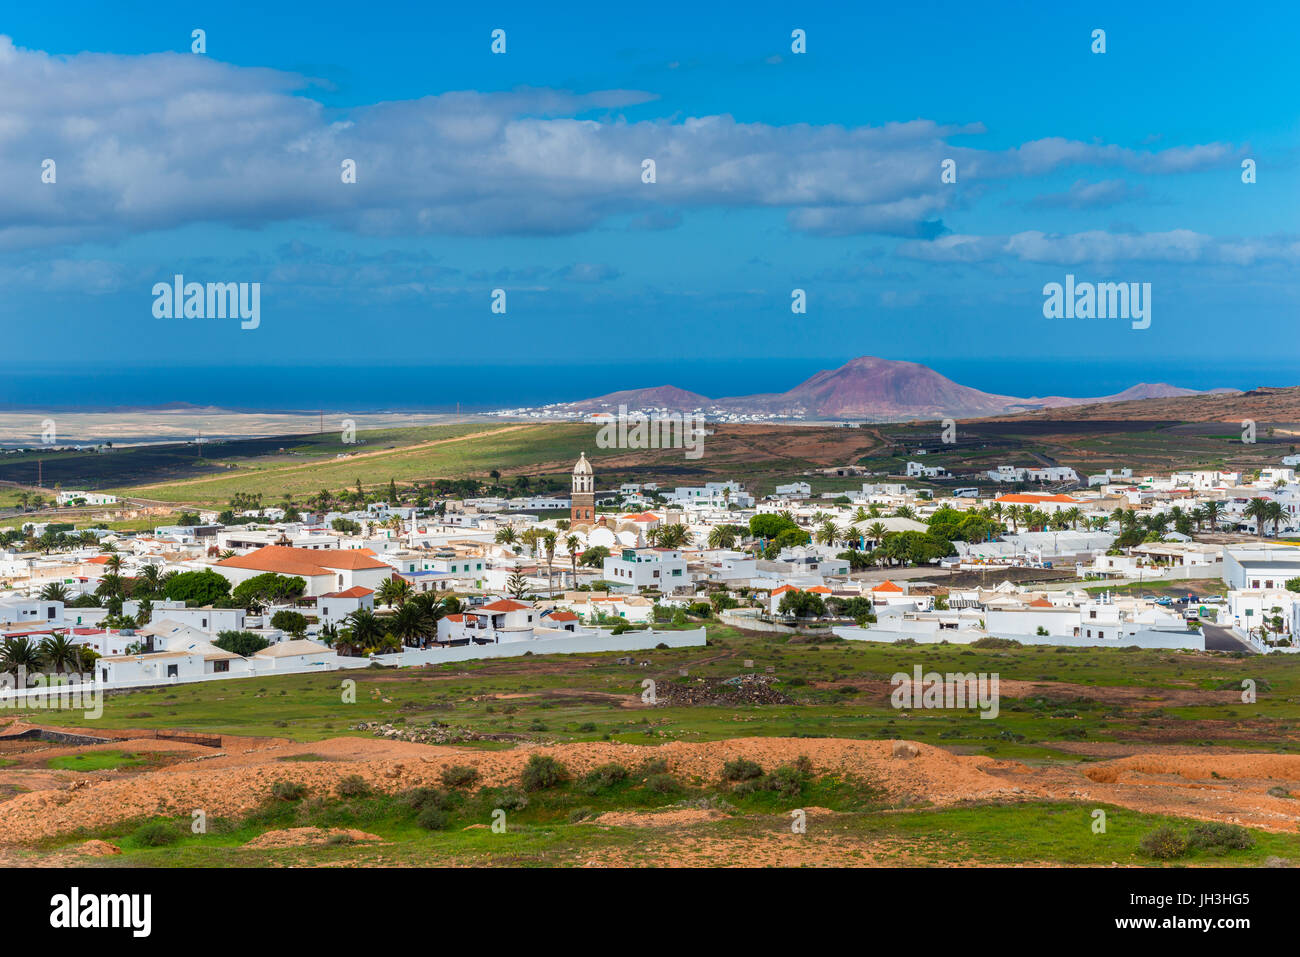 Village de Teguise, Lanzarote, îles Canaries, Espagne Banque D'Images